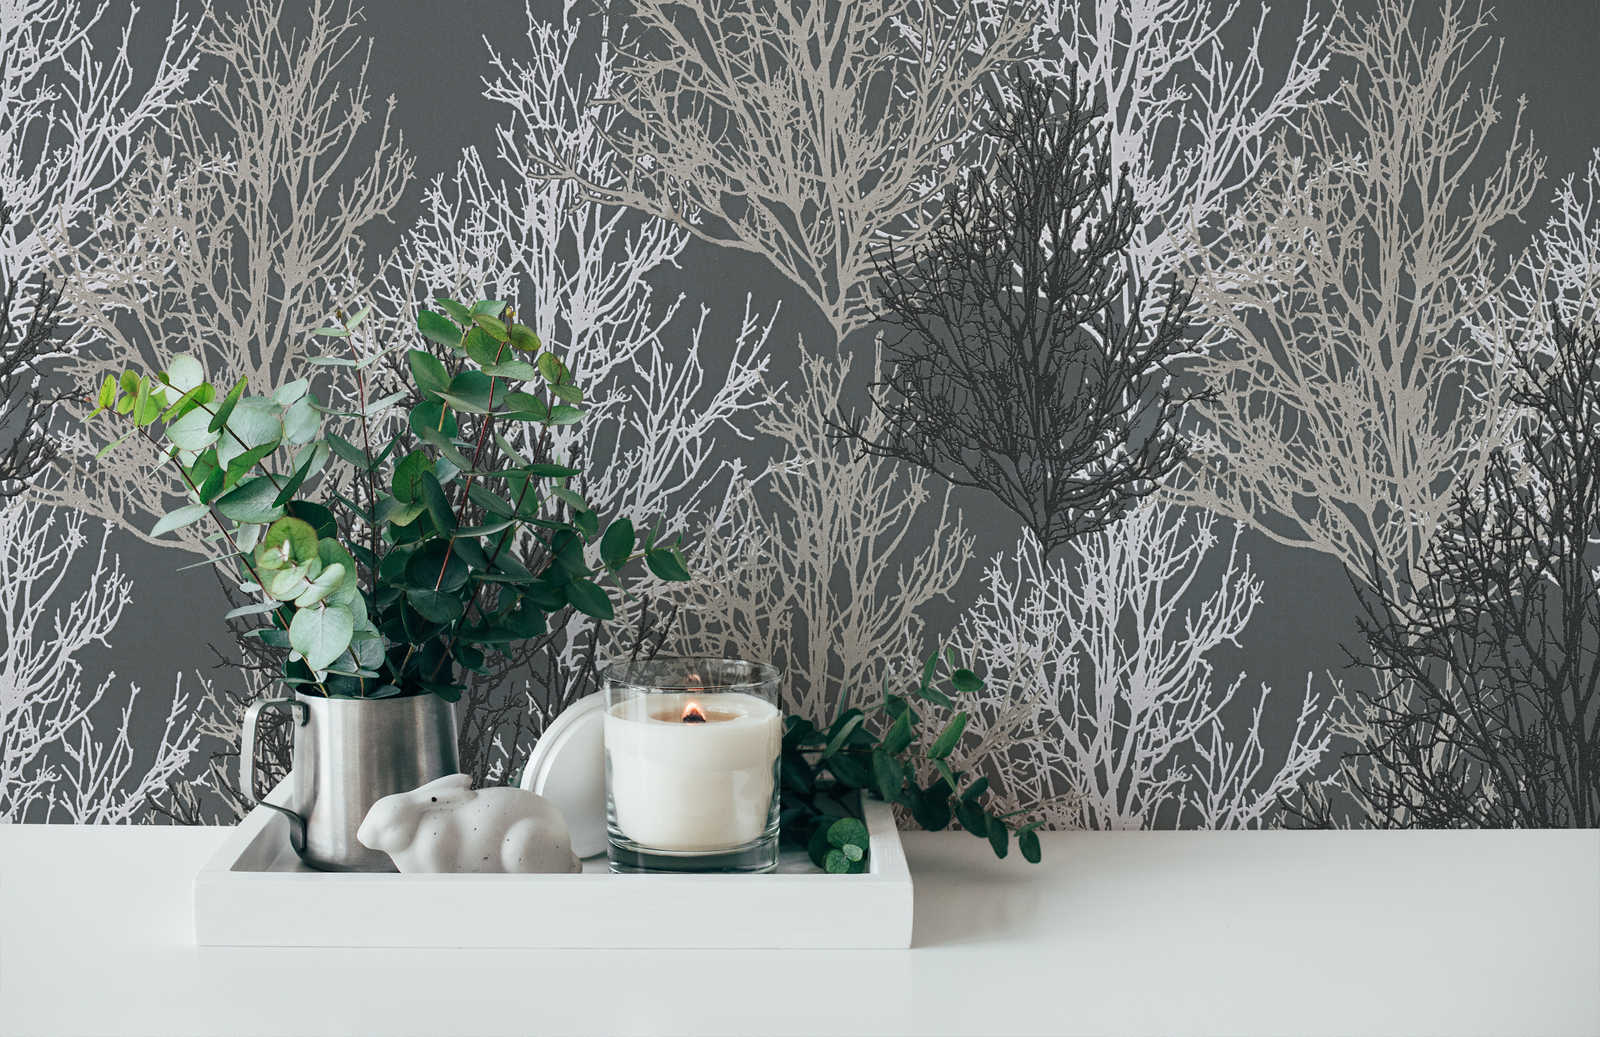             Papiertapete Baum Design mit Metallic Farben & Strukturmuster – Grau
        